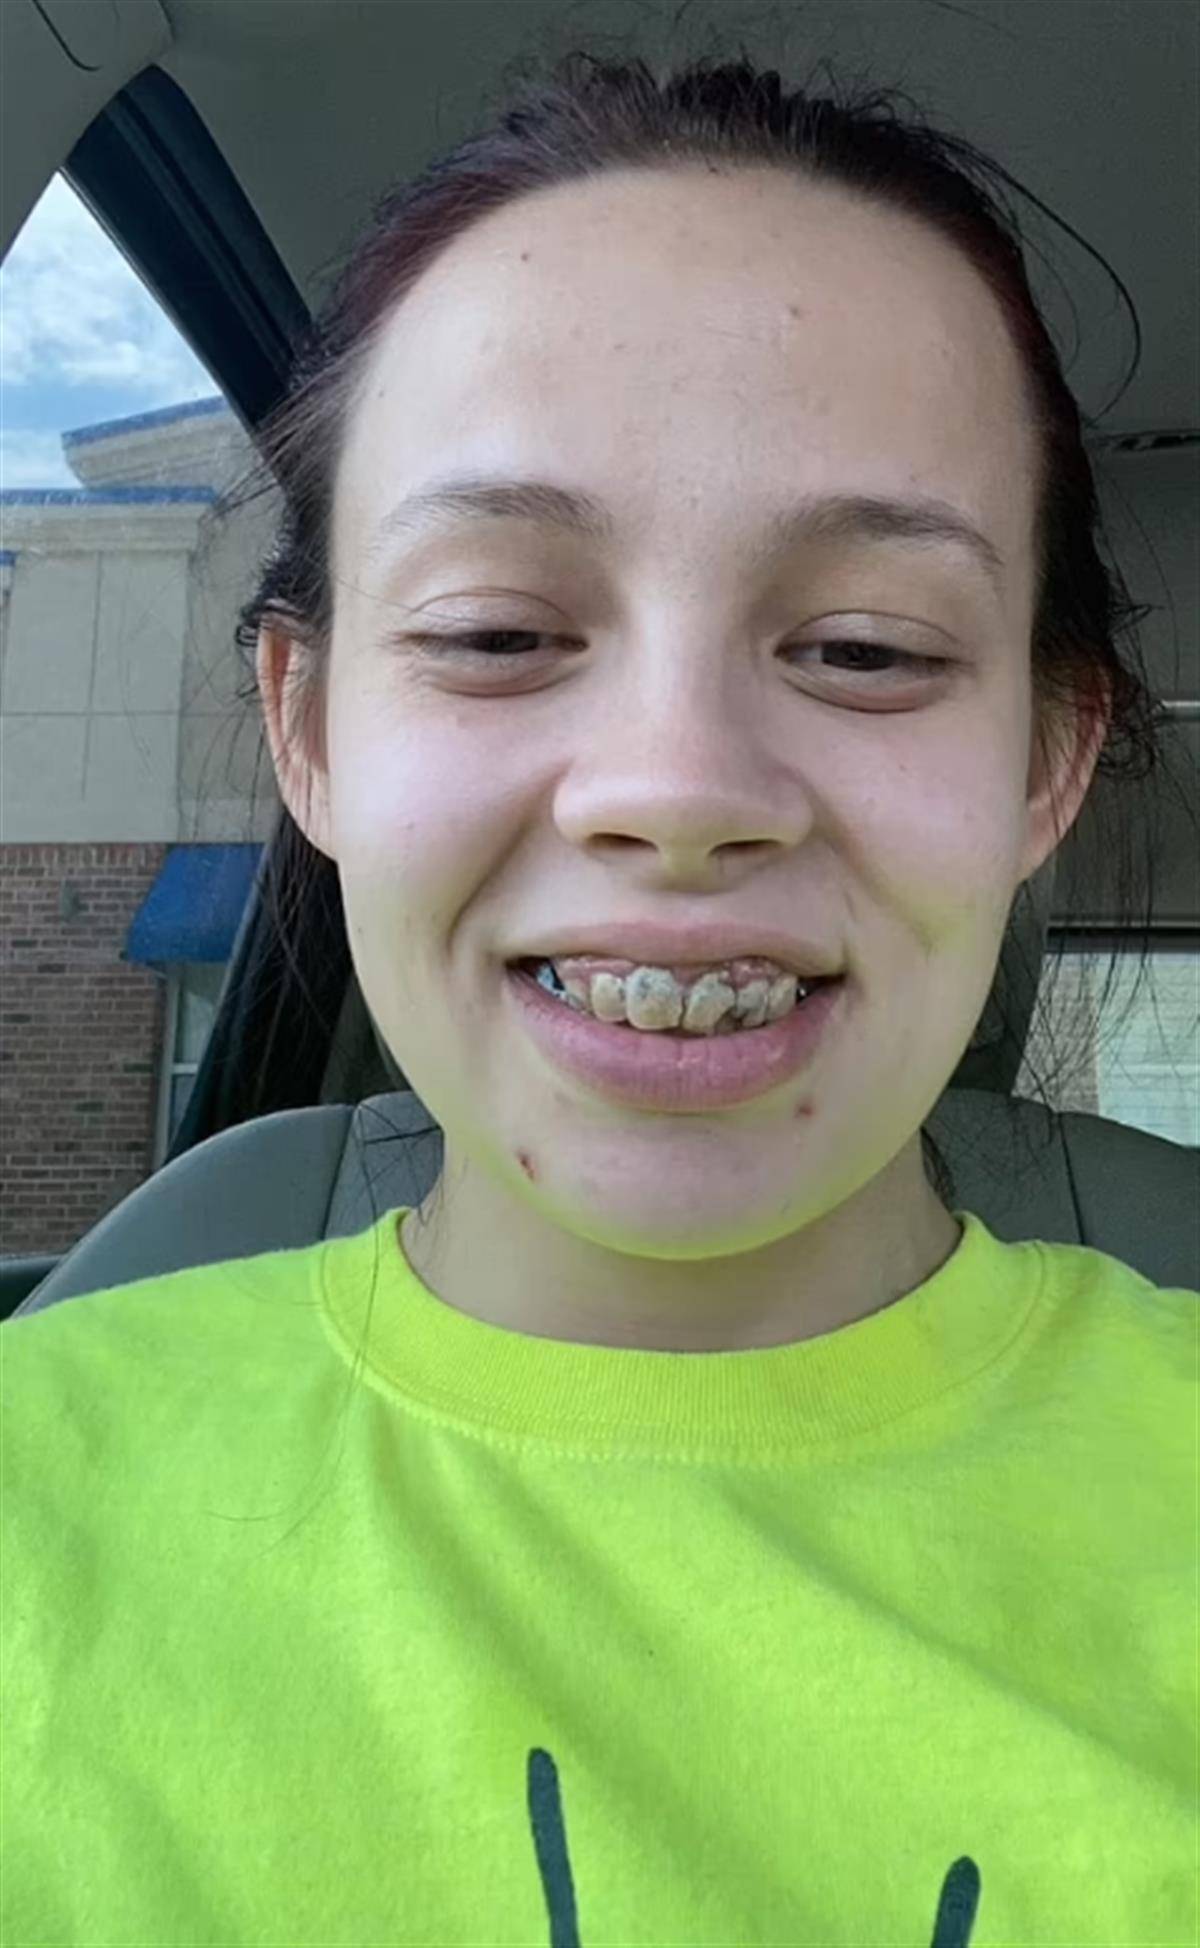 29岁女子一口烂牙不敢微笑,忍痛拔掉了21颗牙,戴着假牙生活